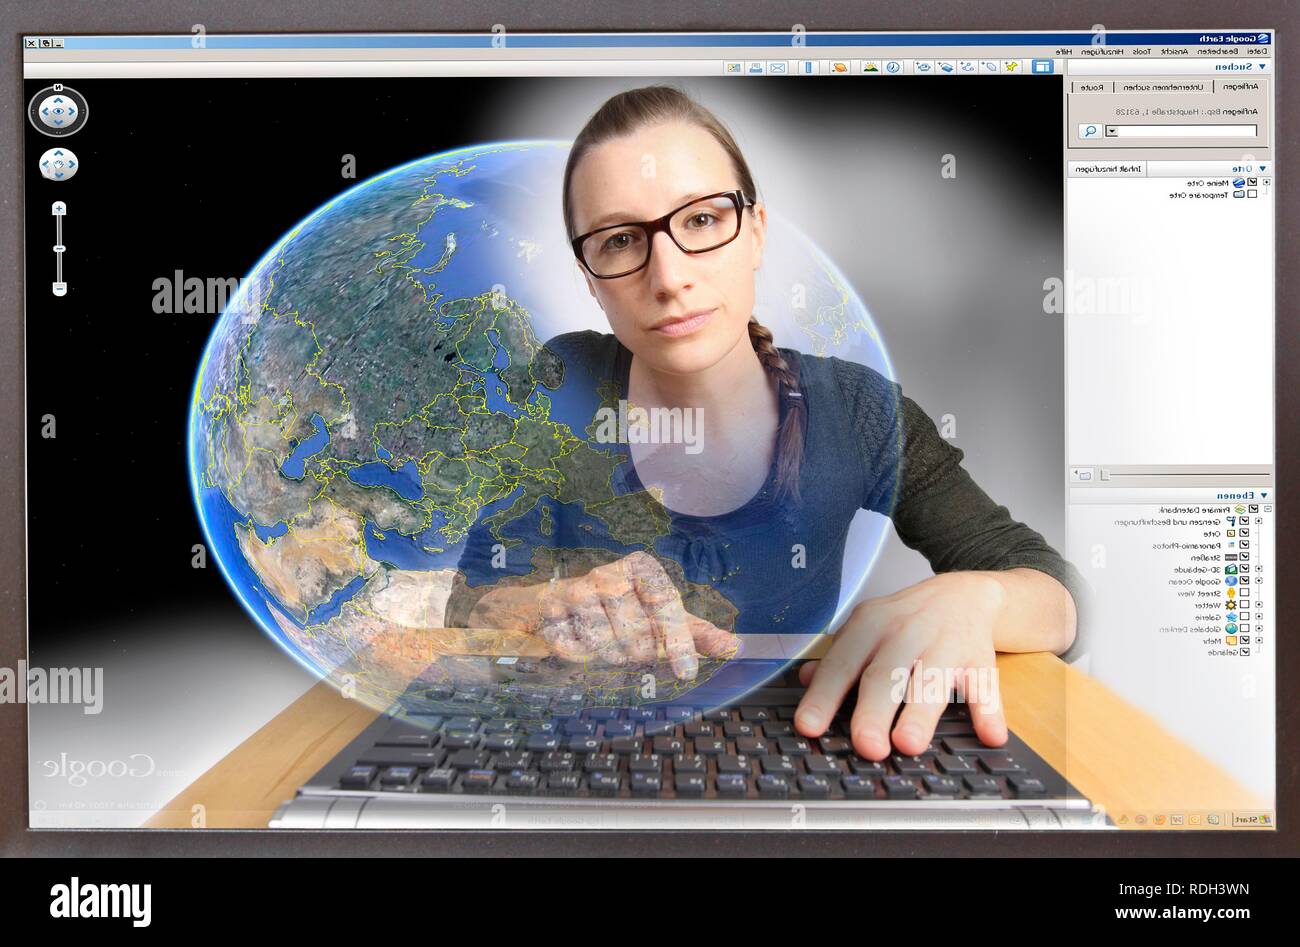 Giovane donna seduta a un computer per navigare in Internet, la visualizzazione di Google Earth, vista dall'interno del computer, immagine simbolica Foto Stock